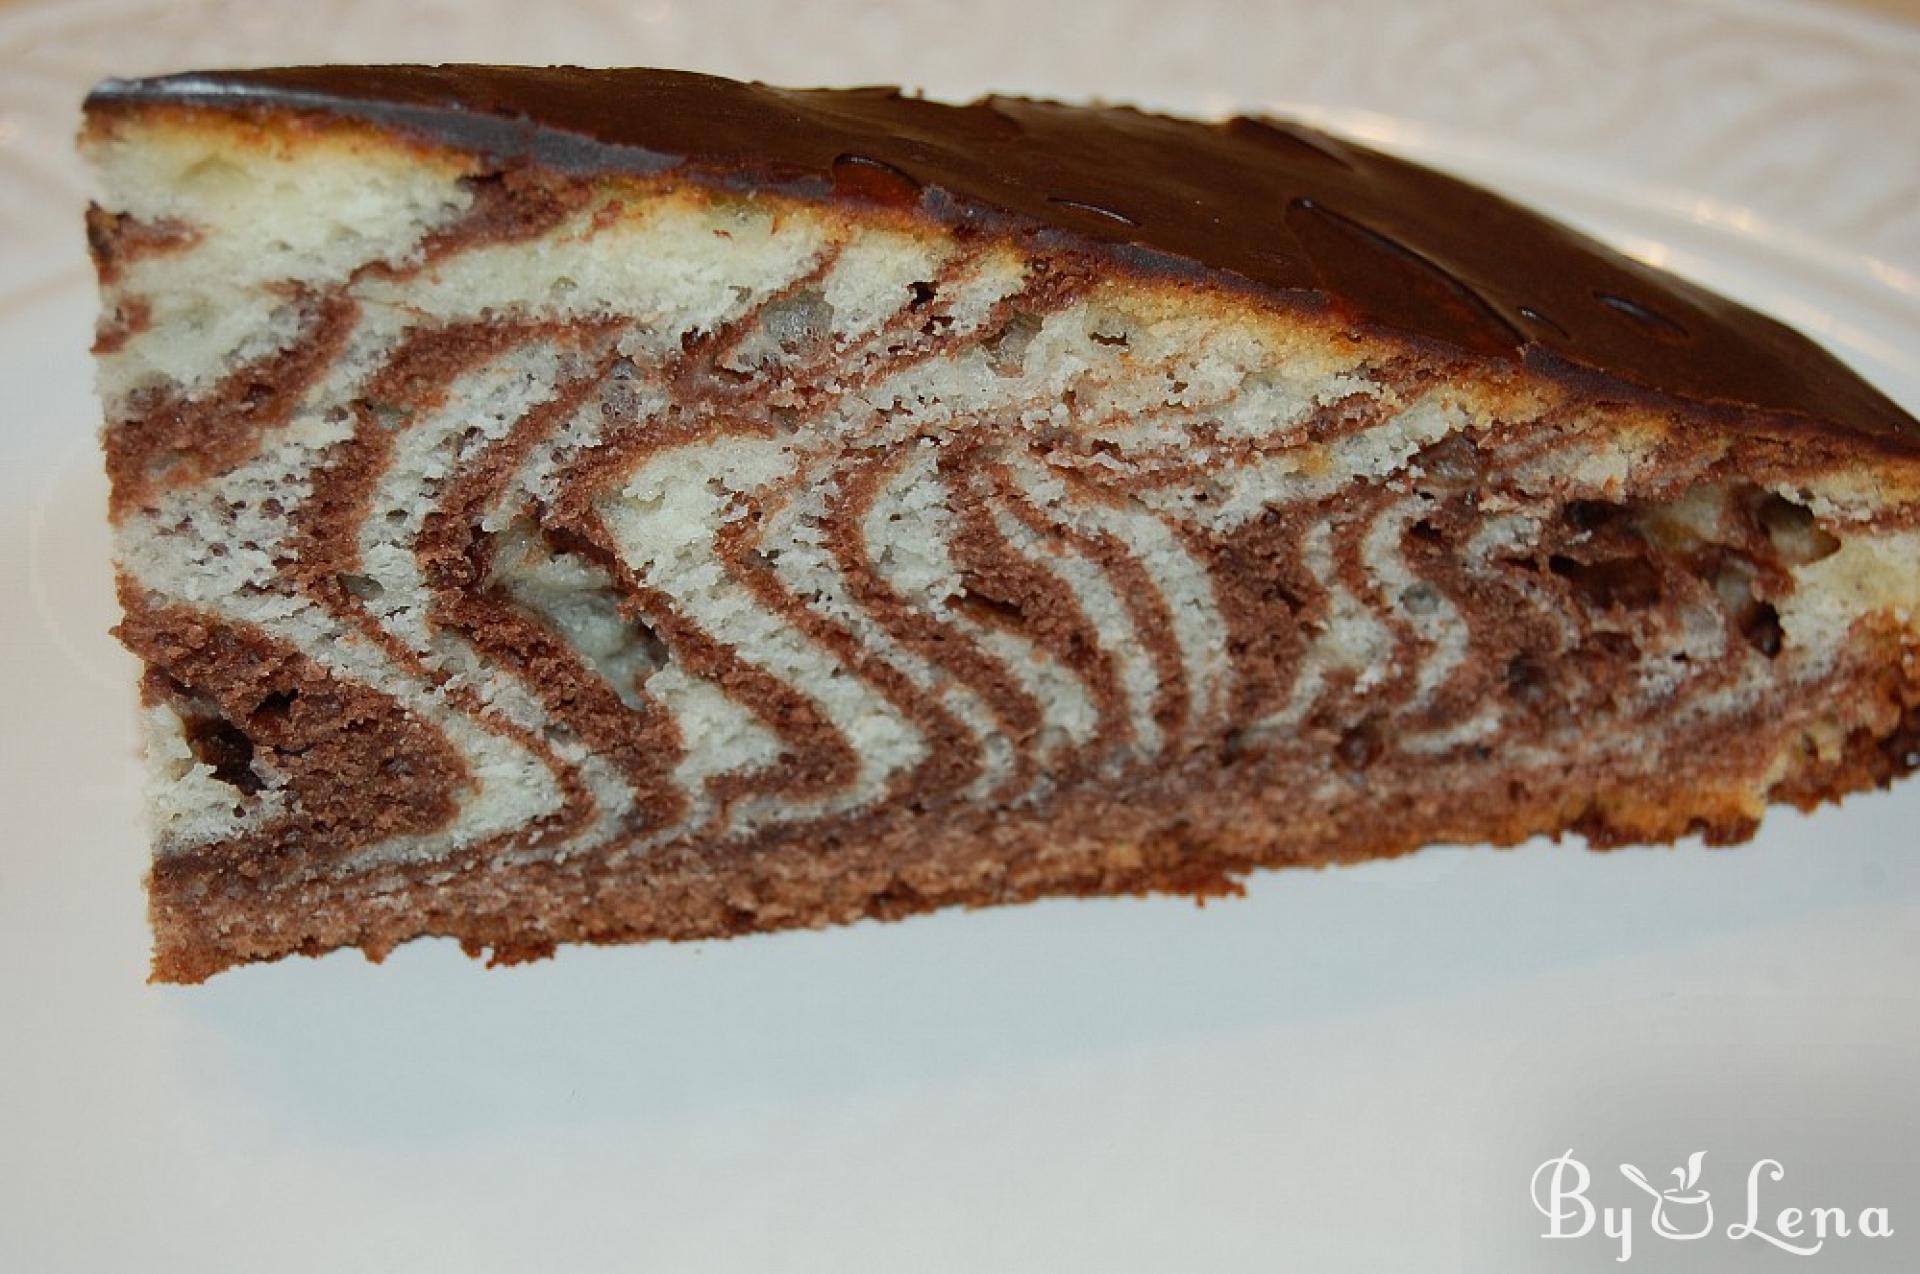 Chocolate Zebra Cake Recipe - (3.1/5)